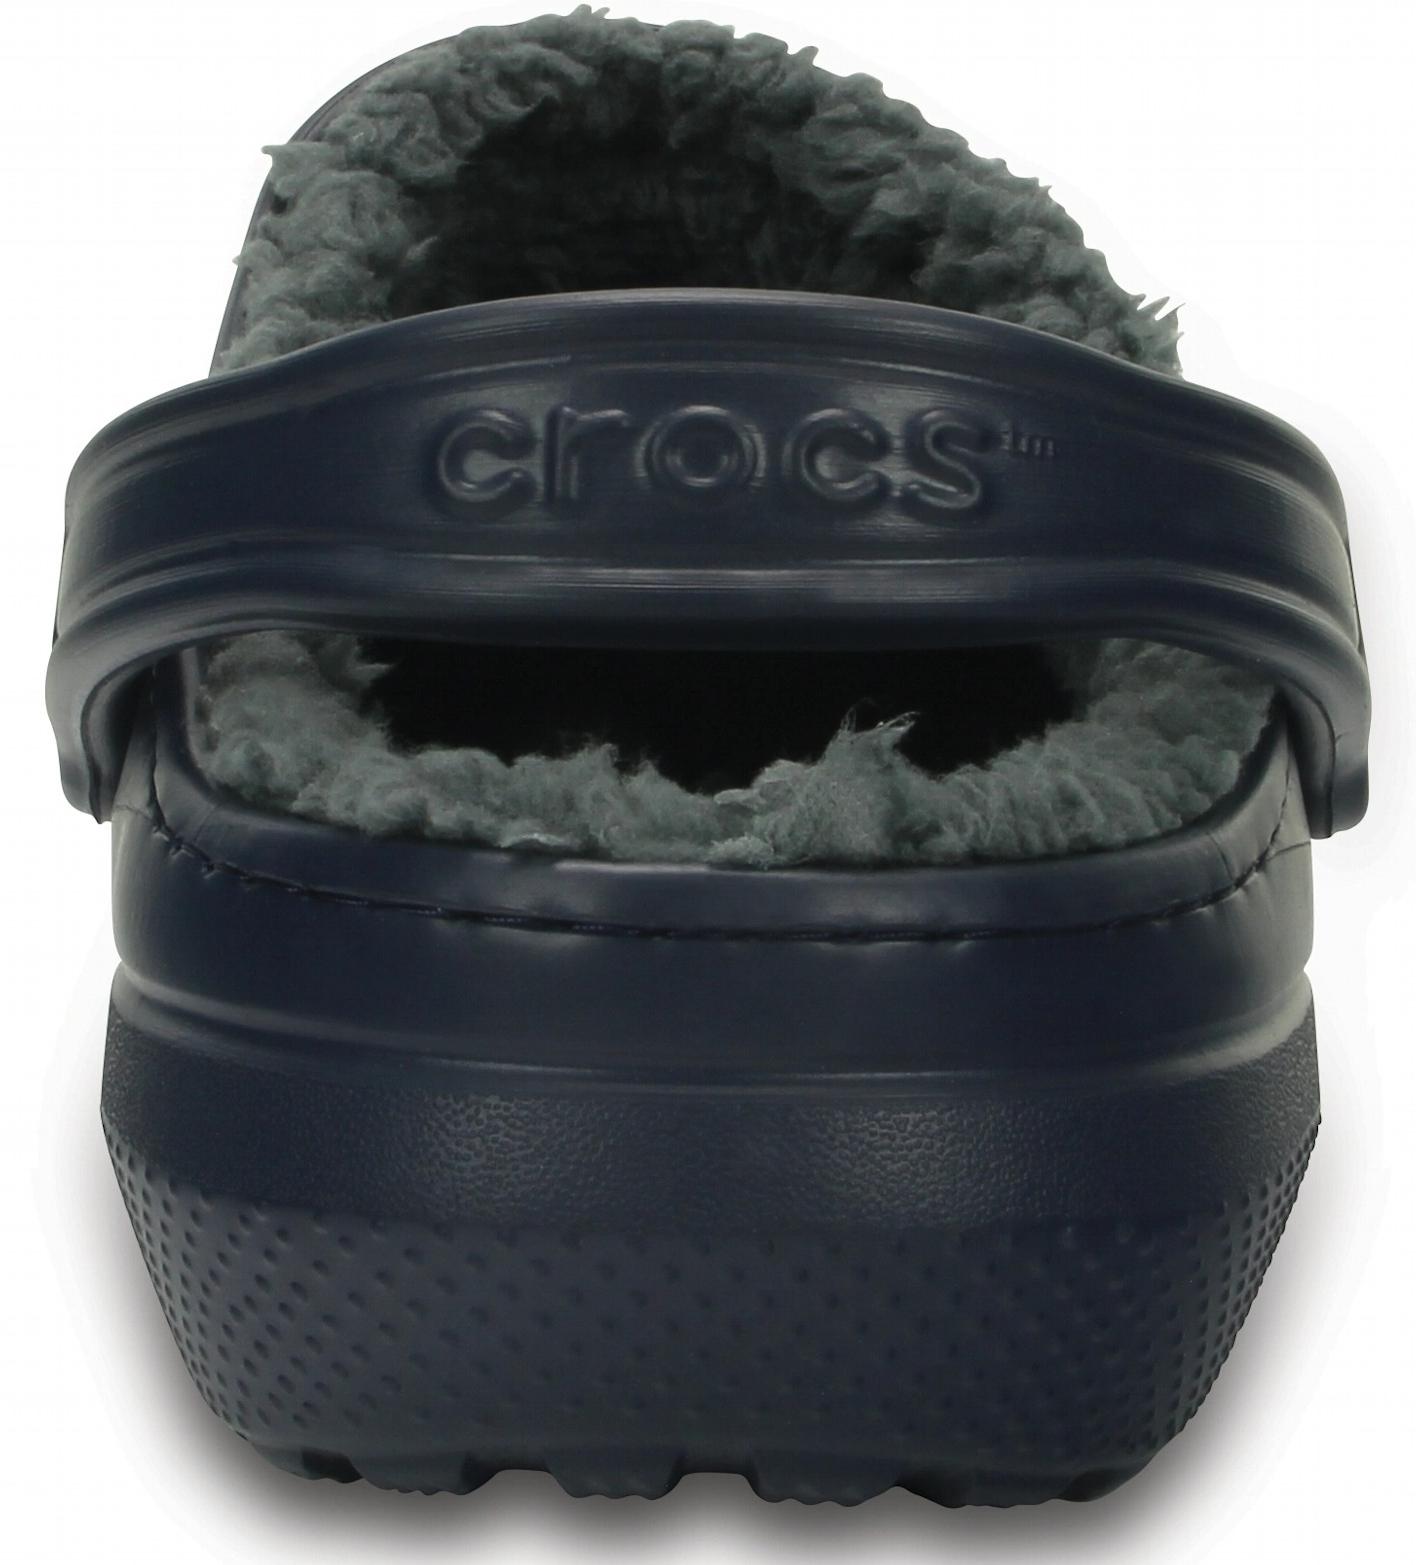 Сандалии Crocs Classic Lined Clog Navy/Charcoal